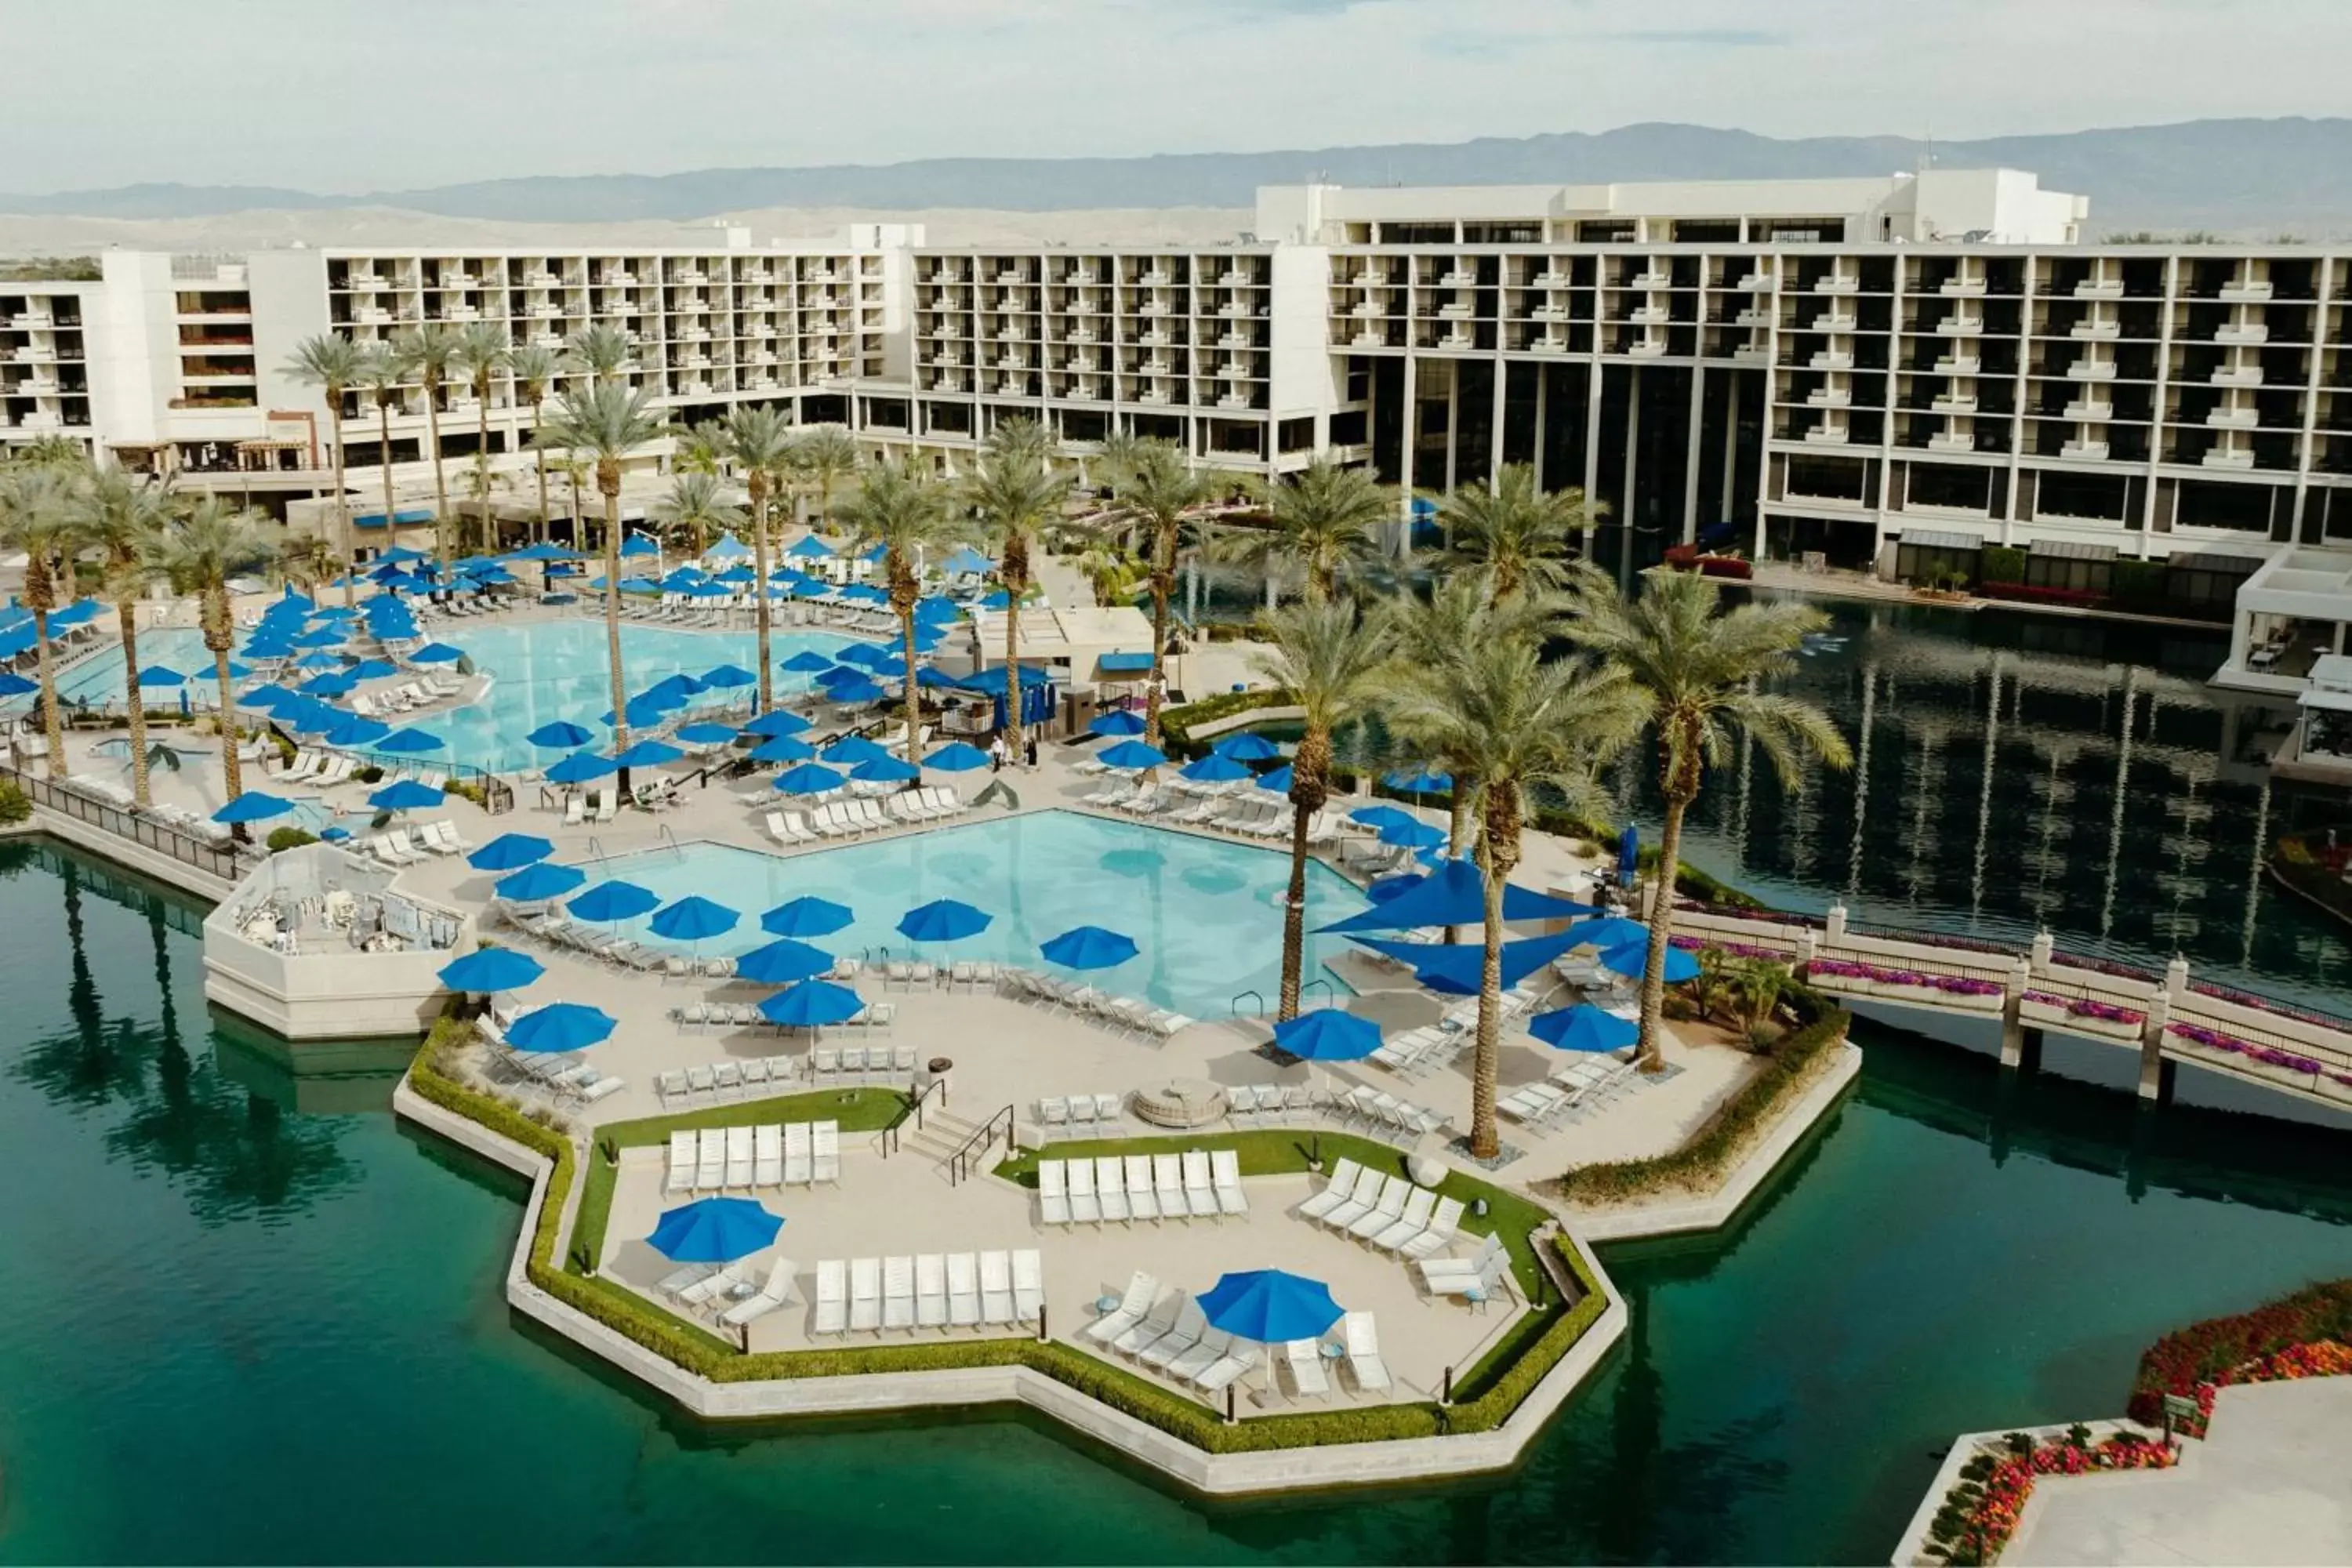 Swimming pool, Pool View in JW Marriott Desert Springs Resort & Spa